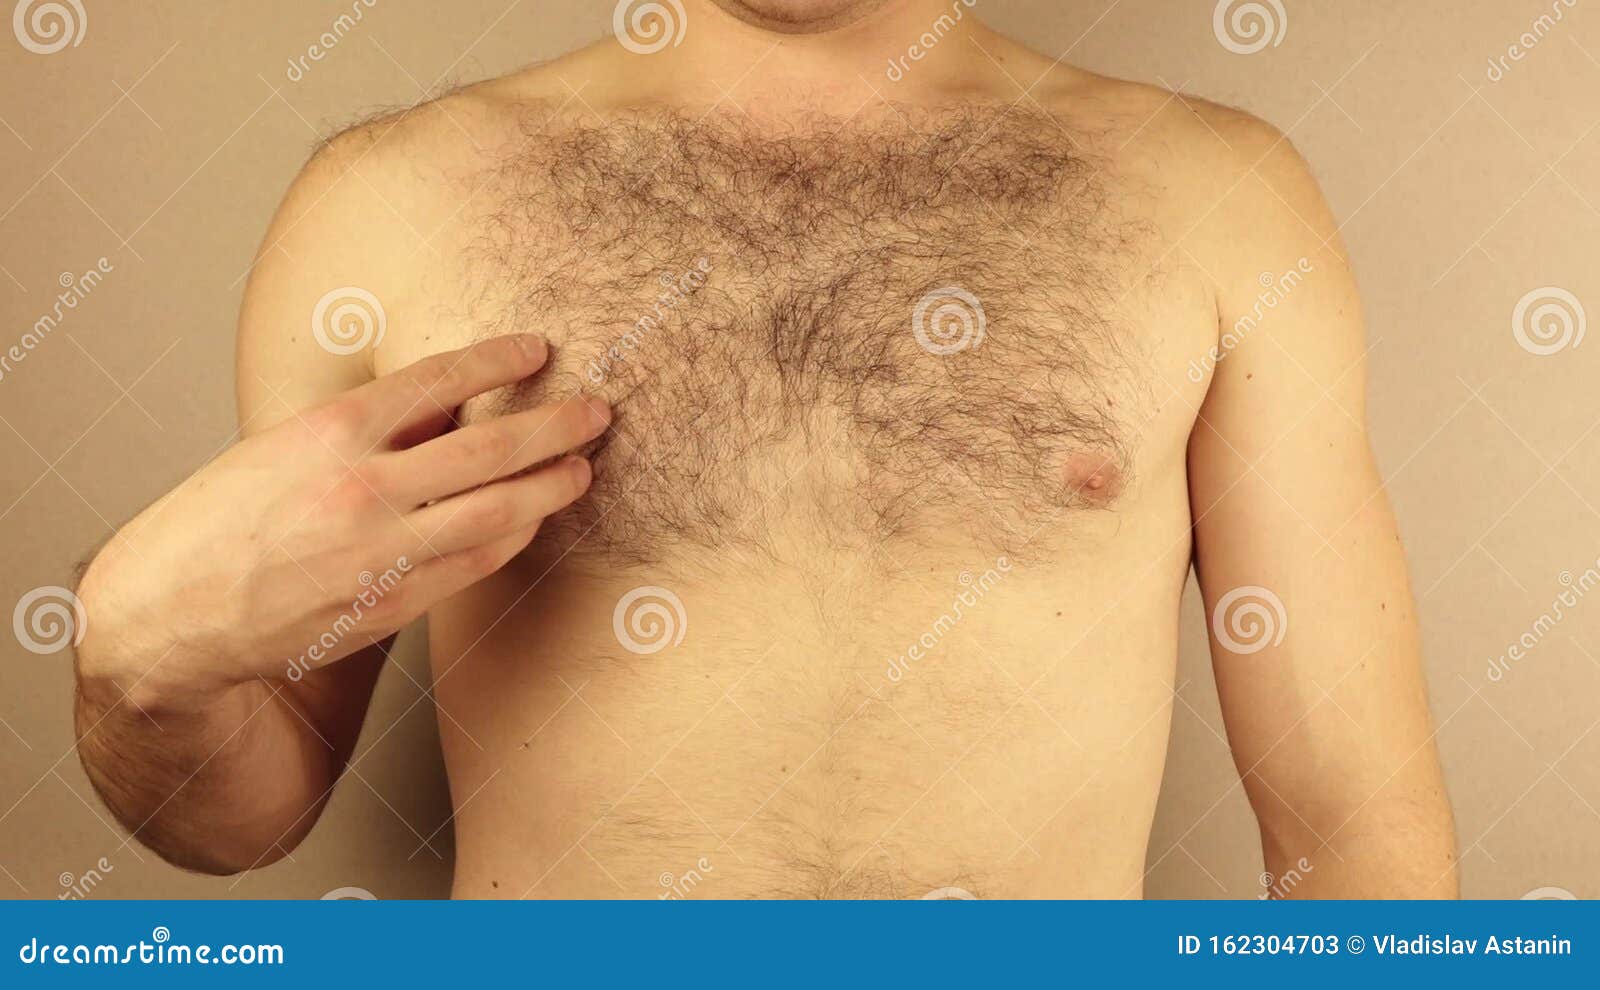 Hombres jóvenes peludos desnudo solos fotos